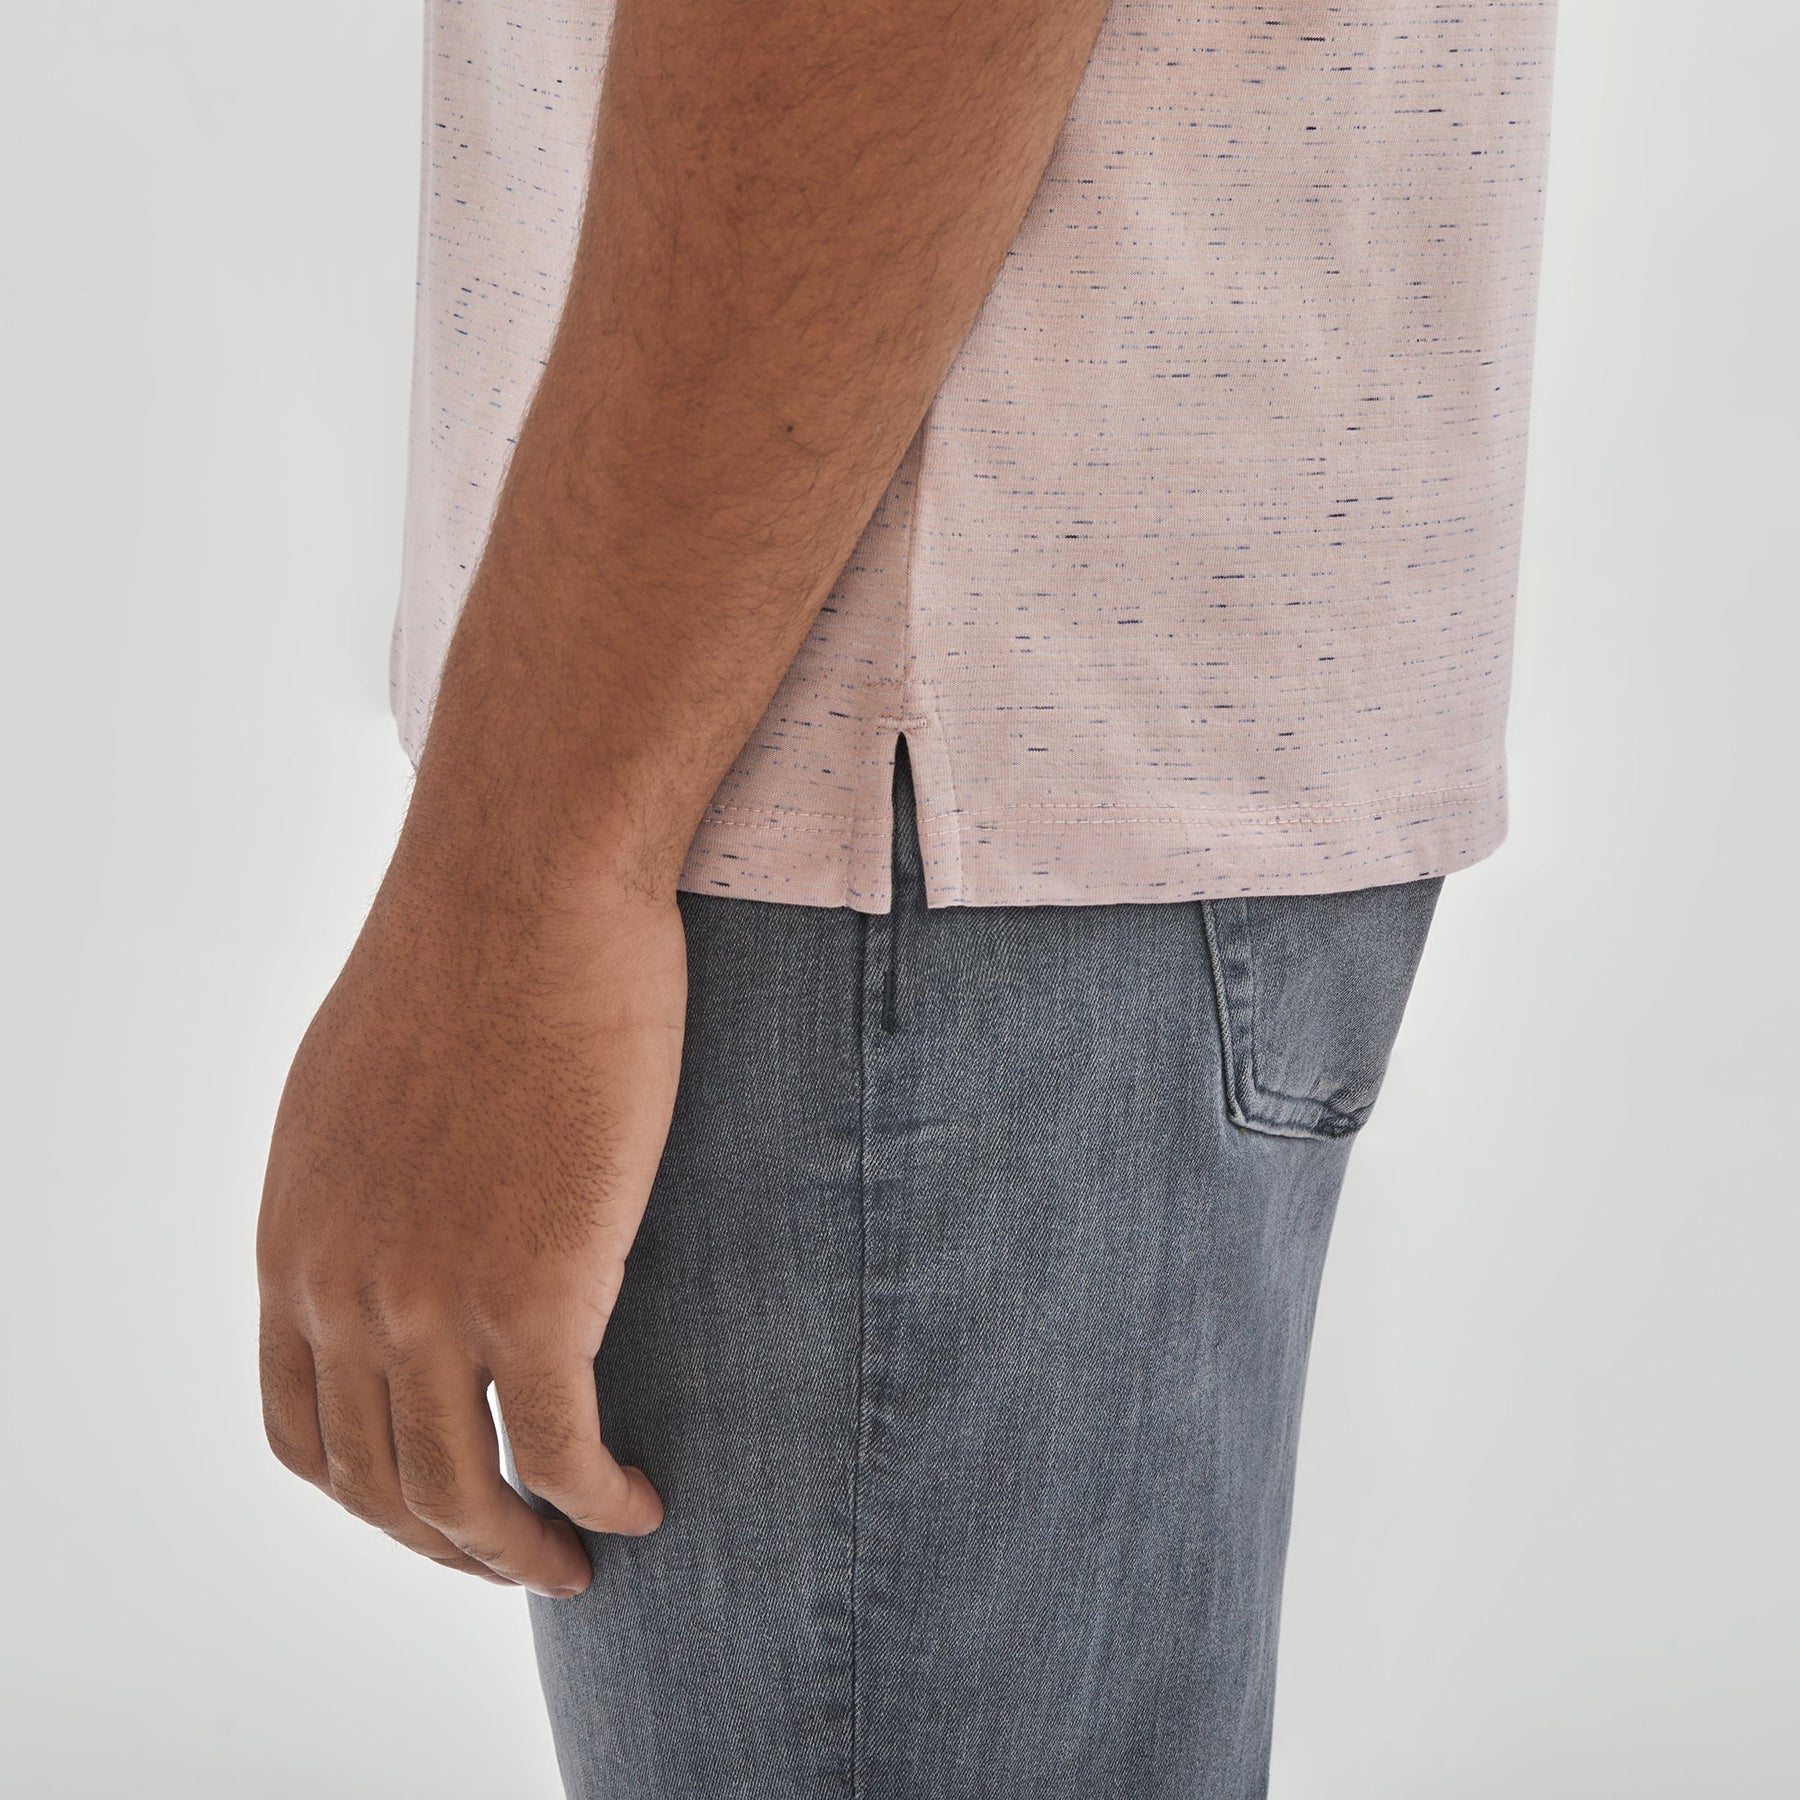 T-Shirt col y pour homme par Robert Barakett | RB31100/Francis Rose/Pink| Boutique Vvög, vêtements mode pour homme et femme